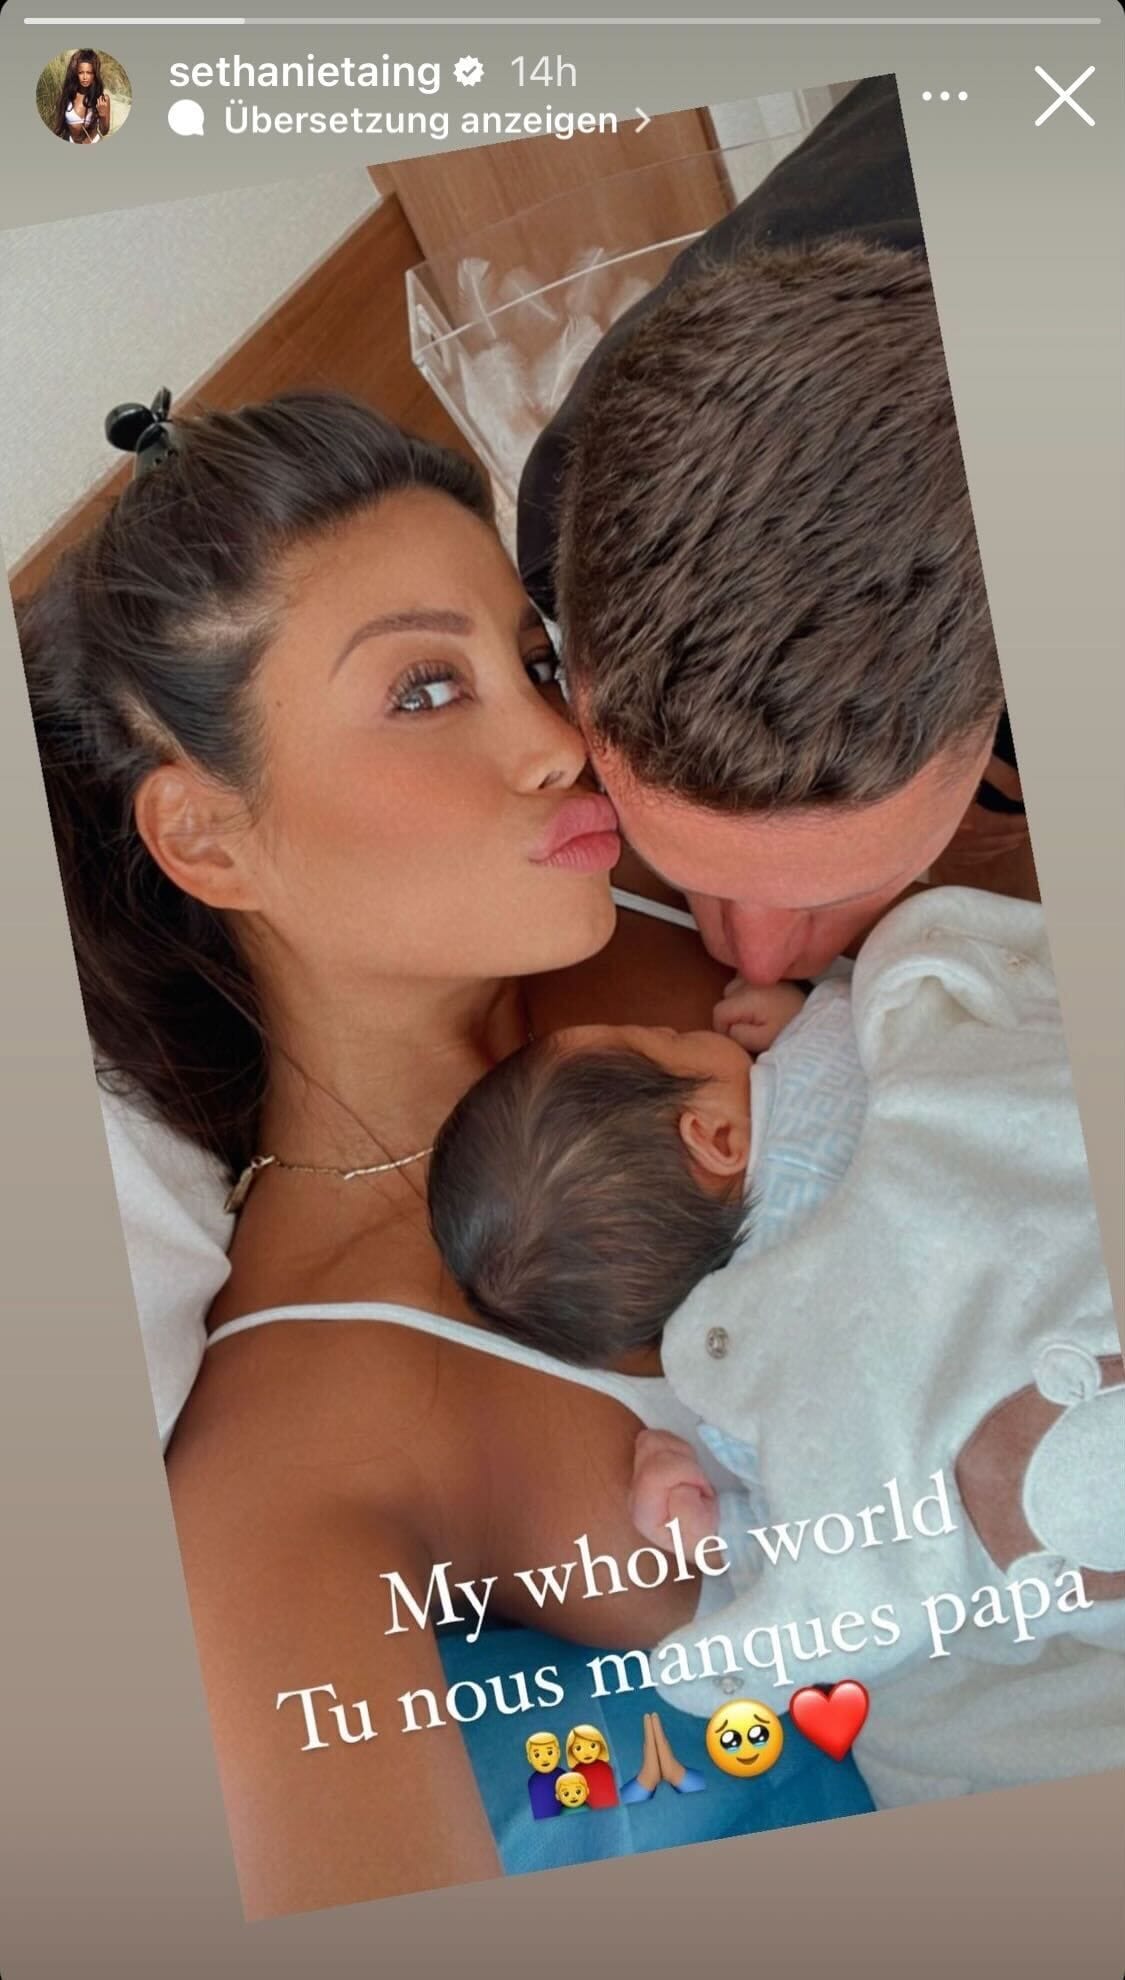 Sethanie und Julian kuscheln in dieser Instagramstory mit ihrem Kind.